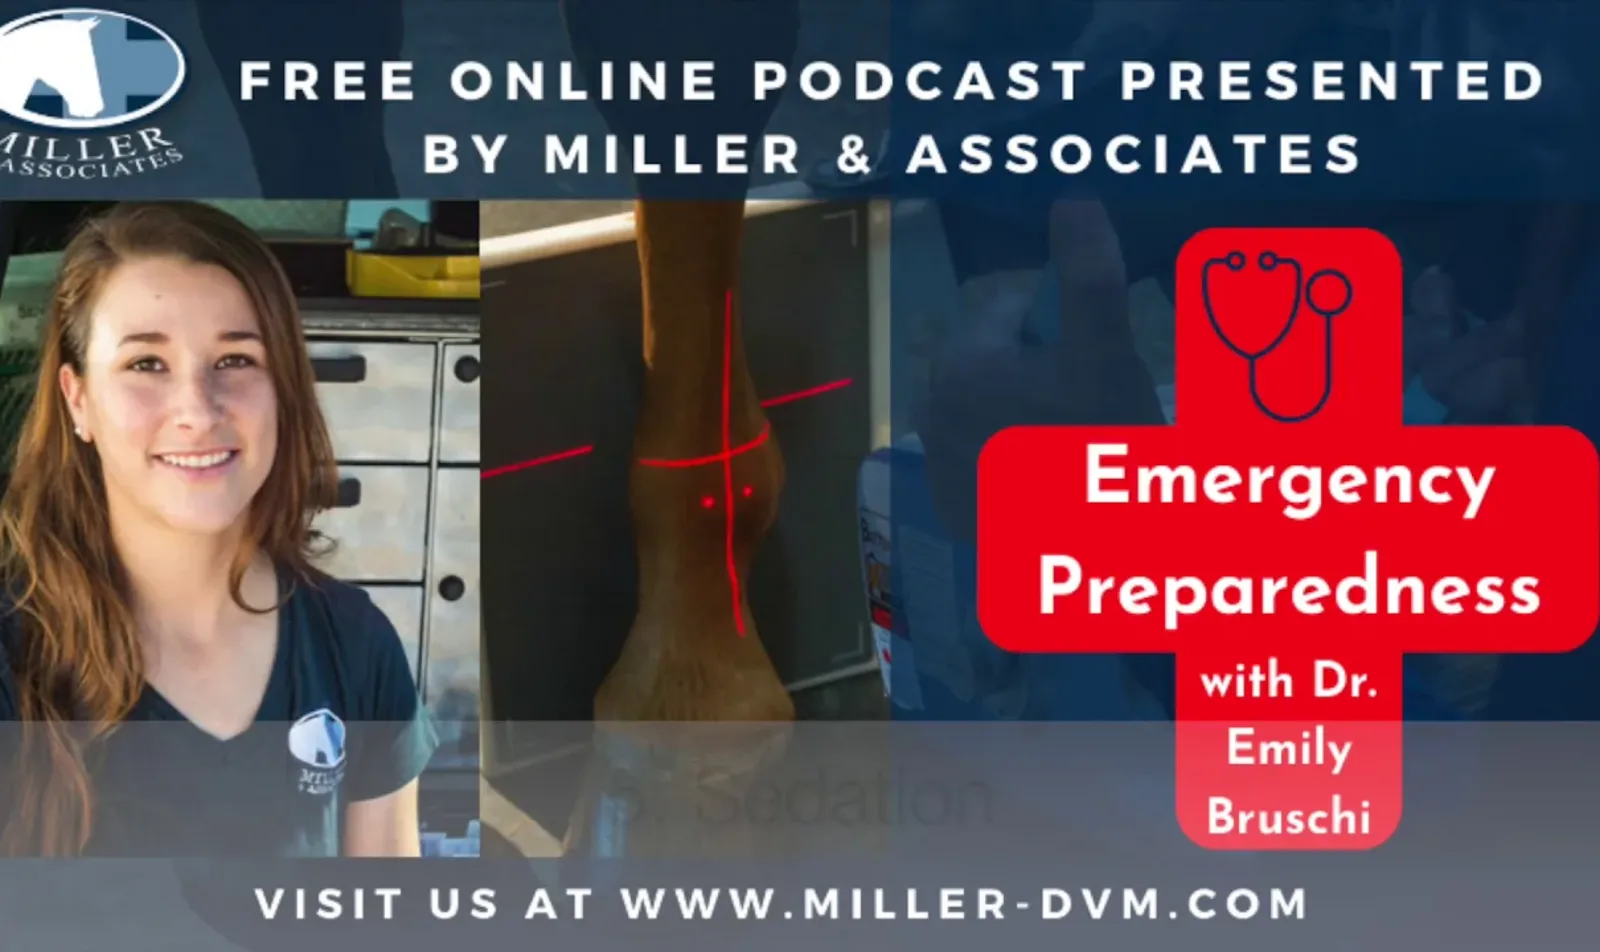 Emergency Preparedness Video Thumbnail from Miller & Associates